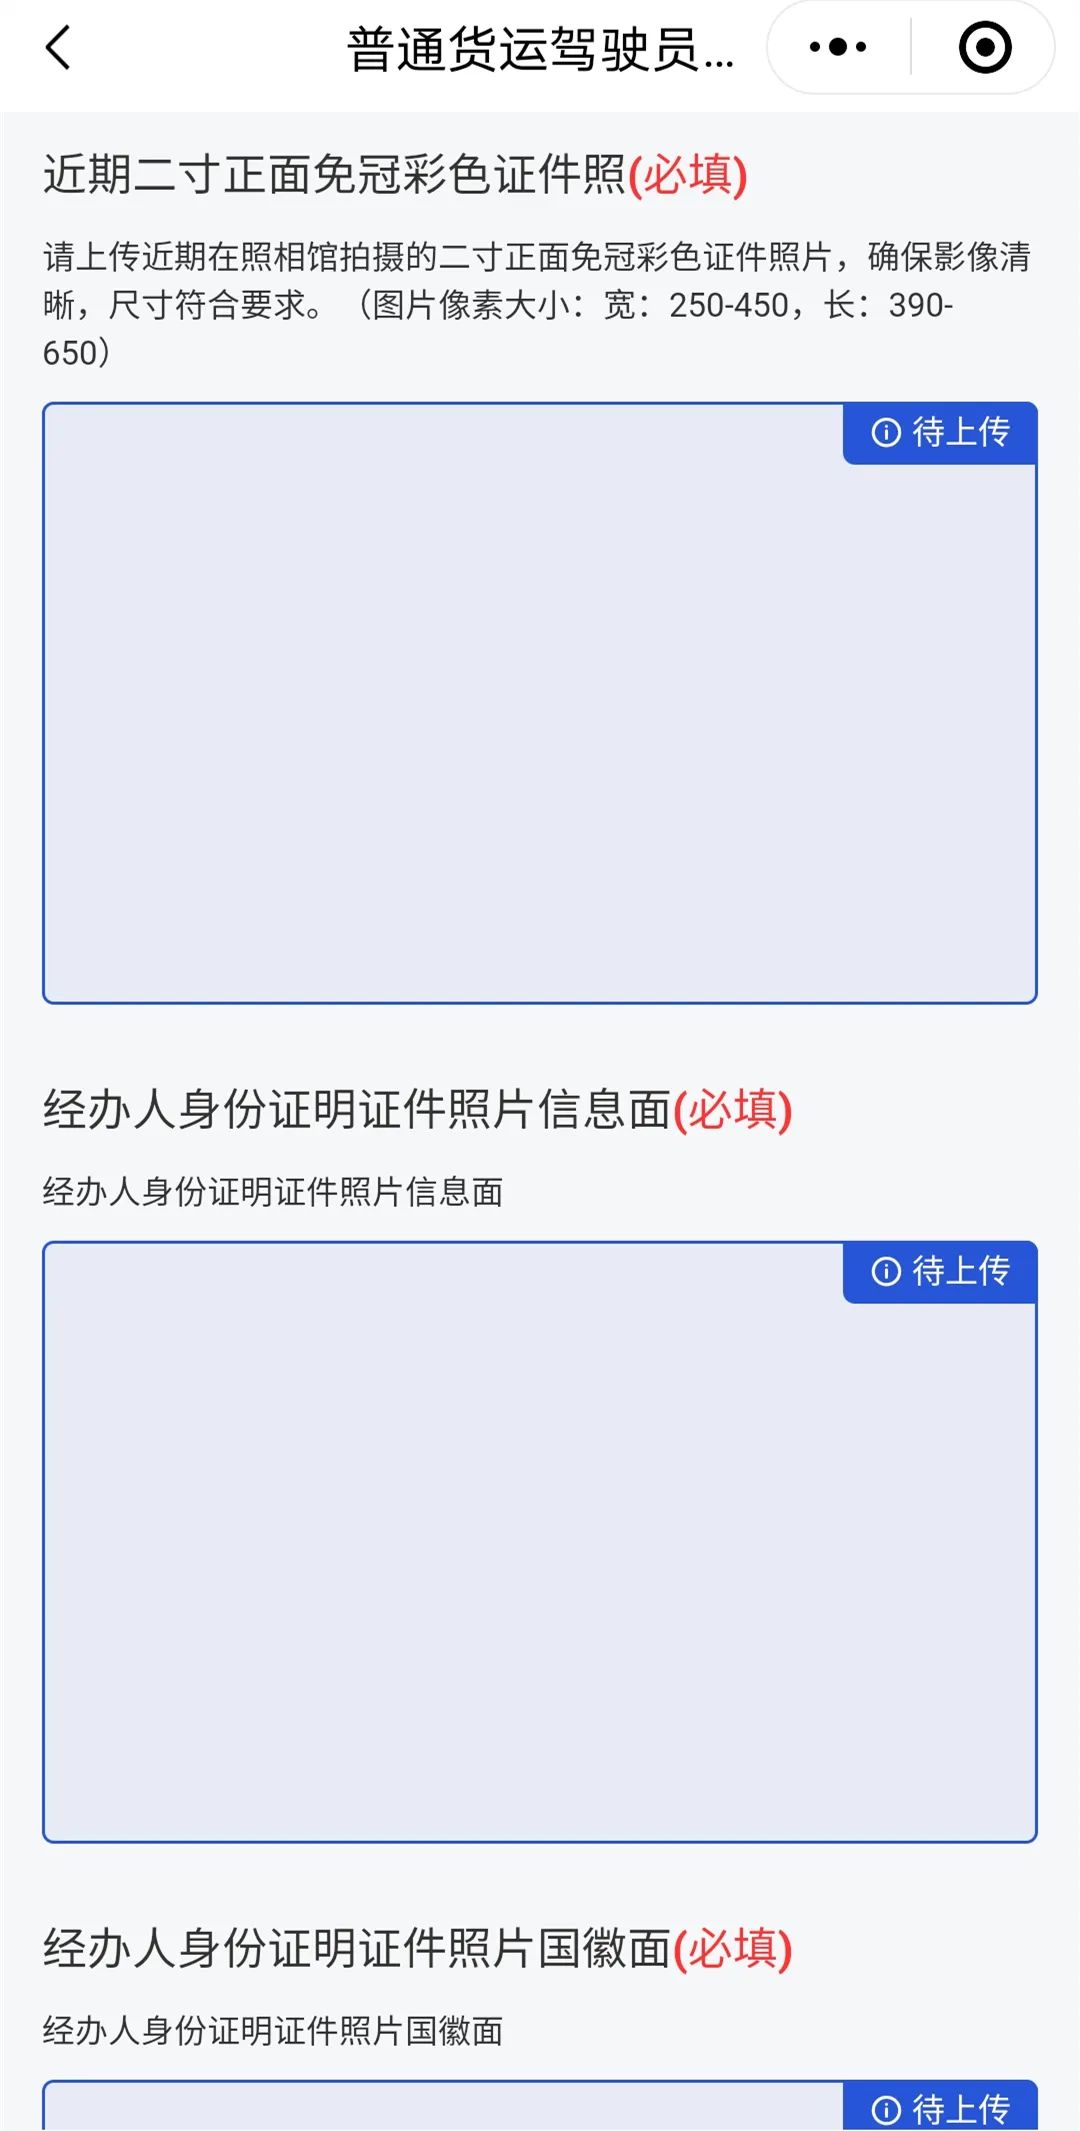 【济宁大运河驾校】出租车、网约车客运上岗证报名进行中...(图4)